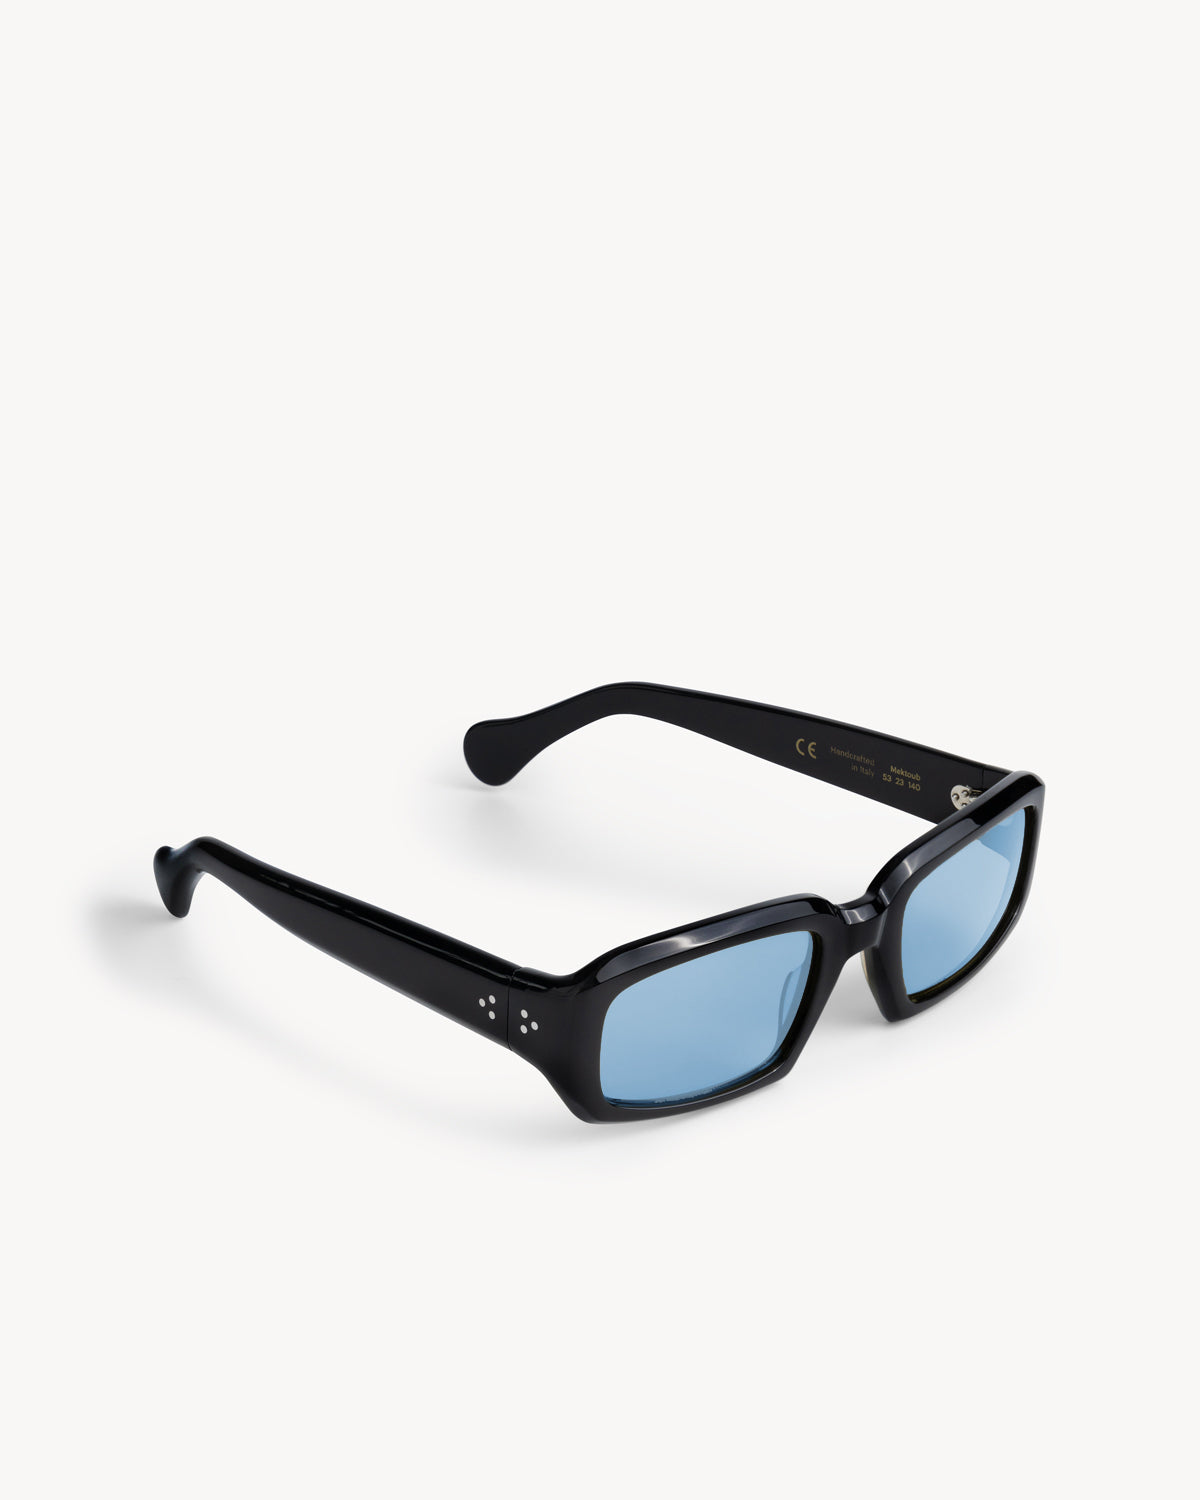 Port Tanger Mektoub Sunglasses in Black Acetate and Rif Blue Lenses 2